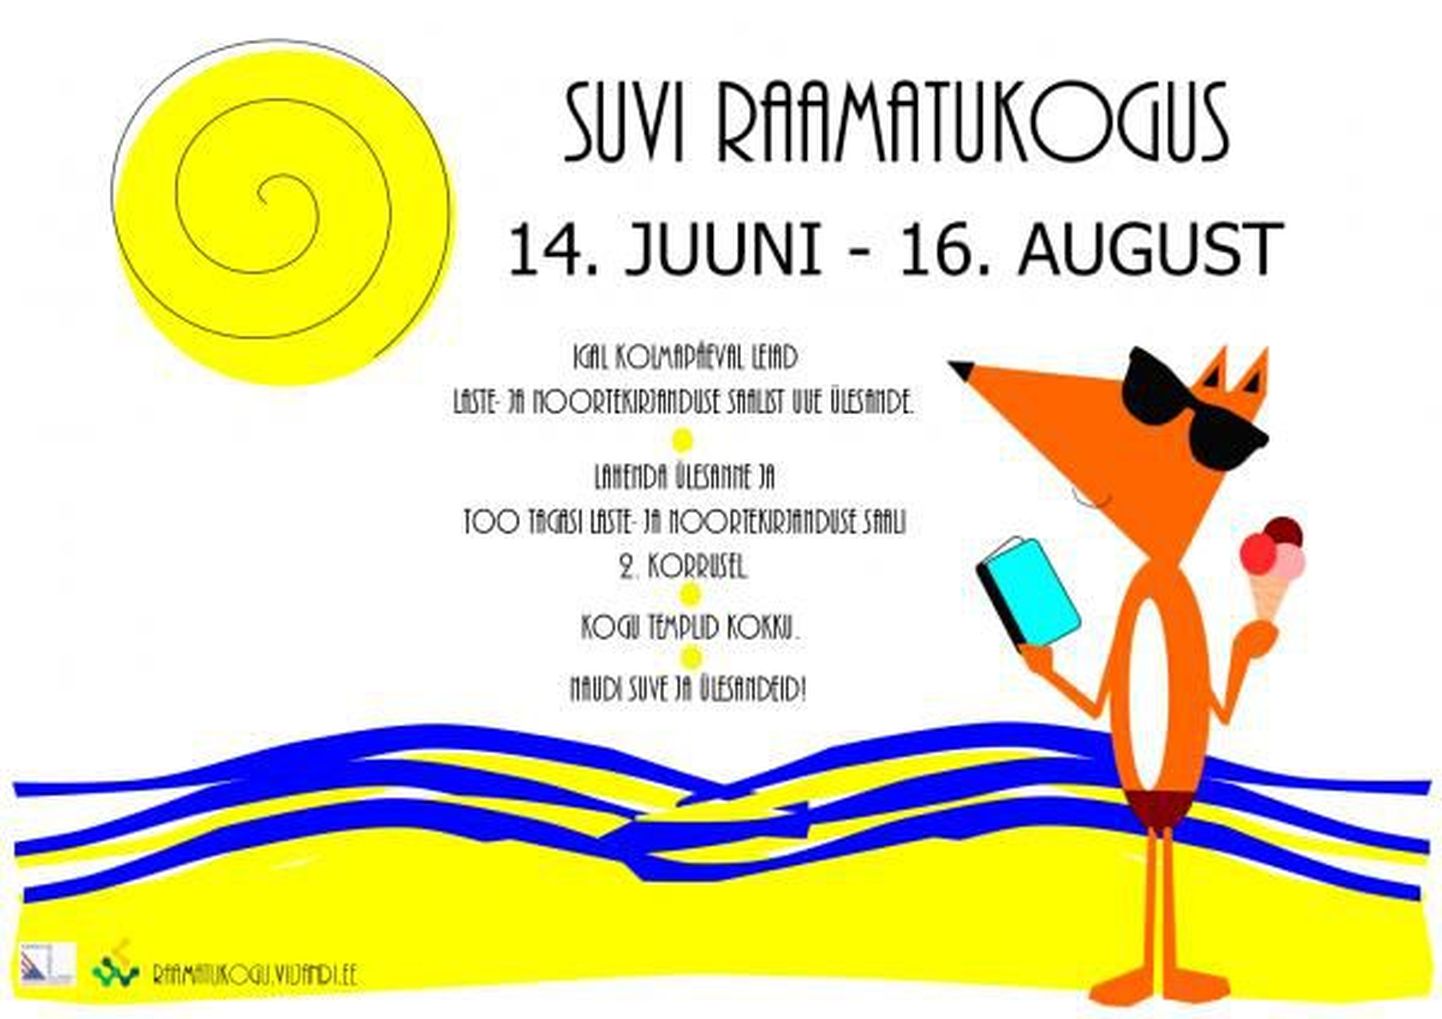 Viljandi linnaraamatukogu laste- ja noortekirjanduse saalis täna kell 10 suvemäng lastele «Suvi raamatukogus».